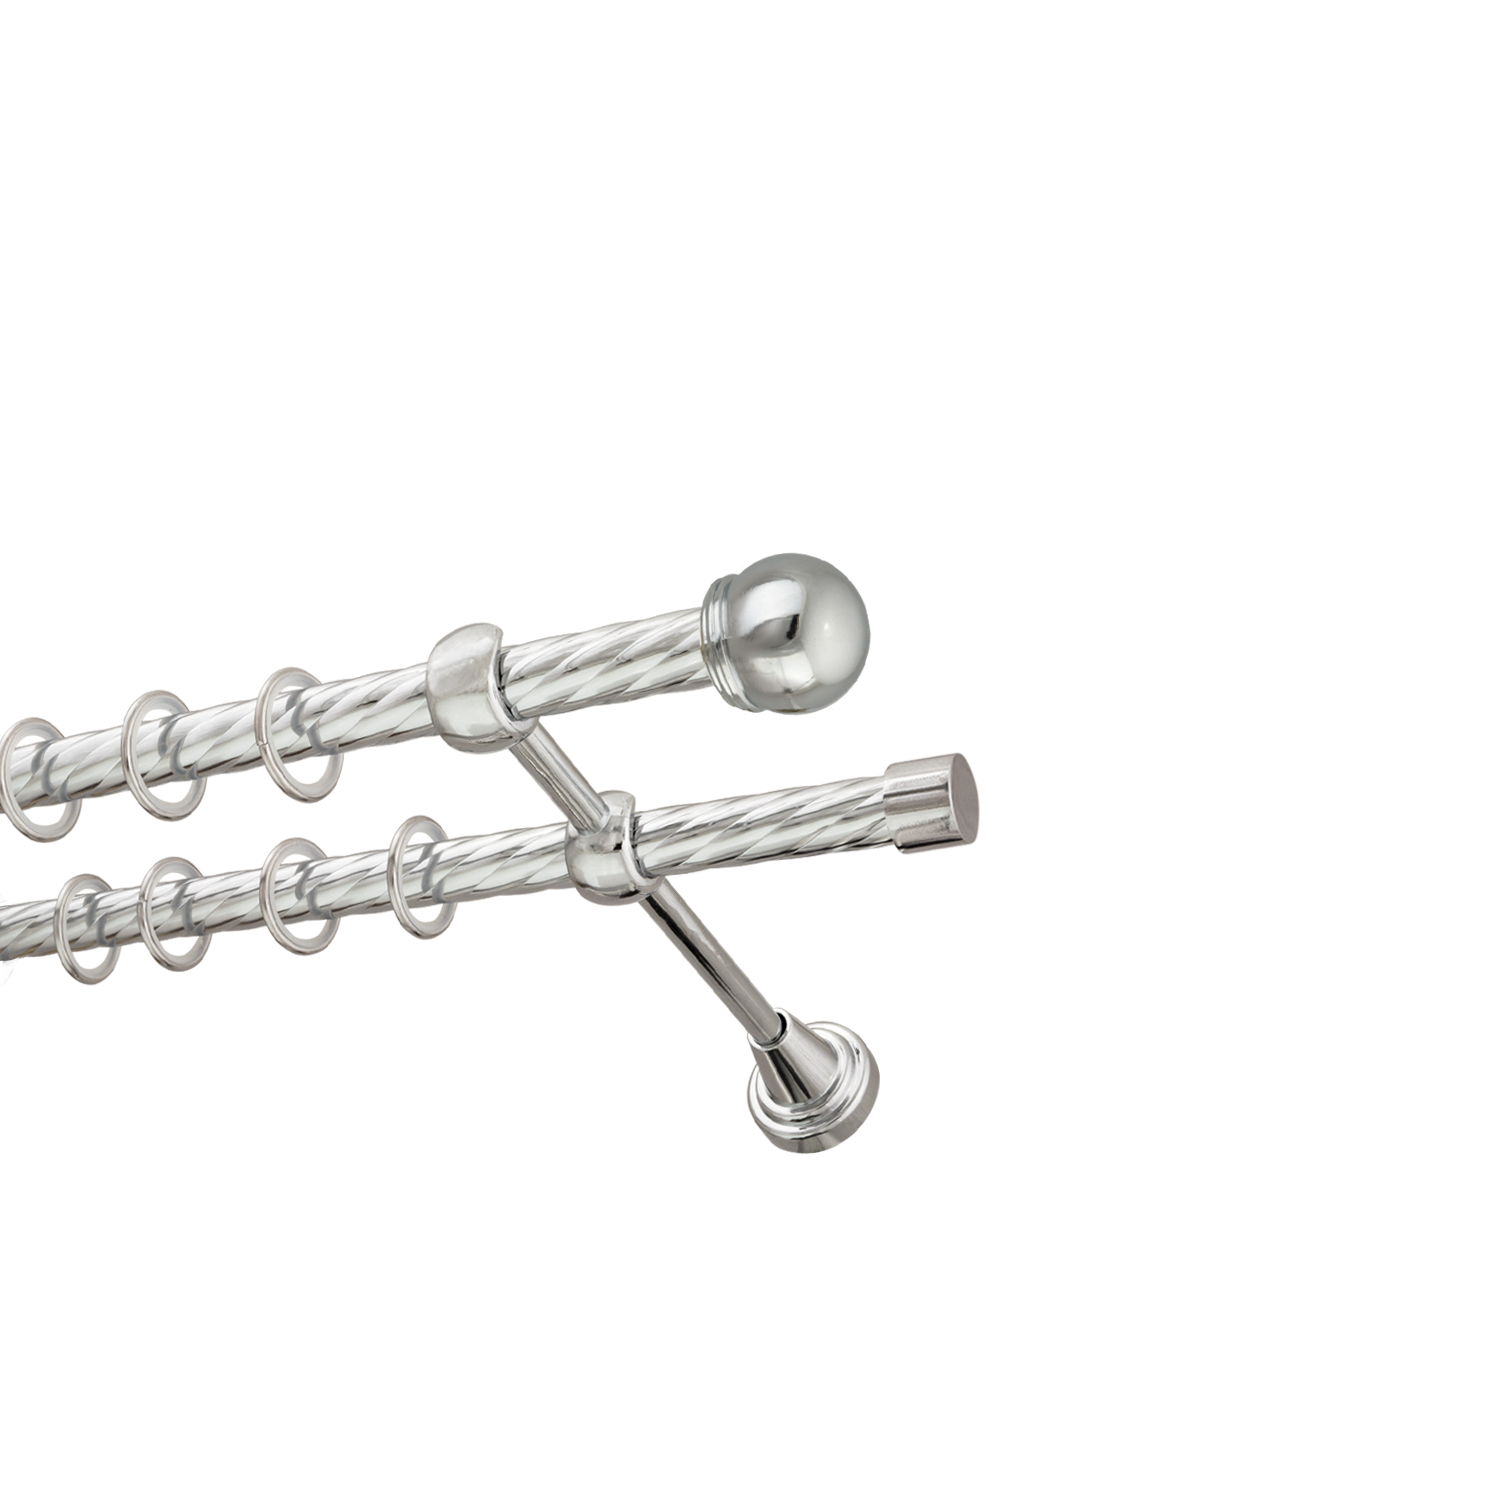 Металлический карниз для штор Вива, двухрядный 16/16 мм, серебро, витая штанга, длина 160 см